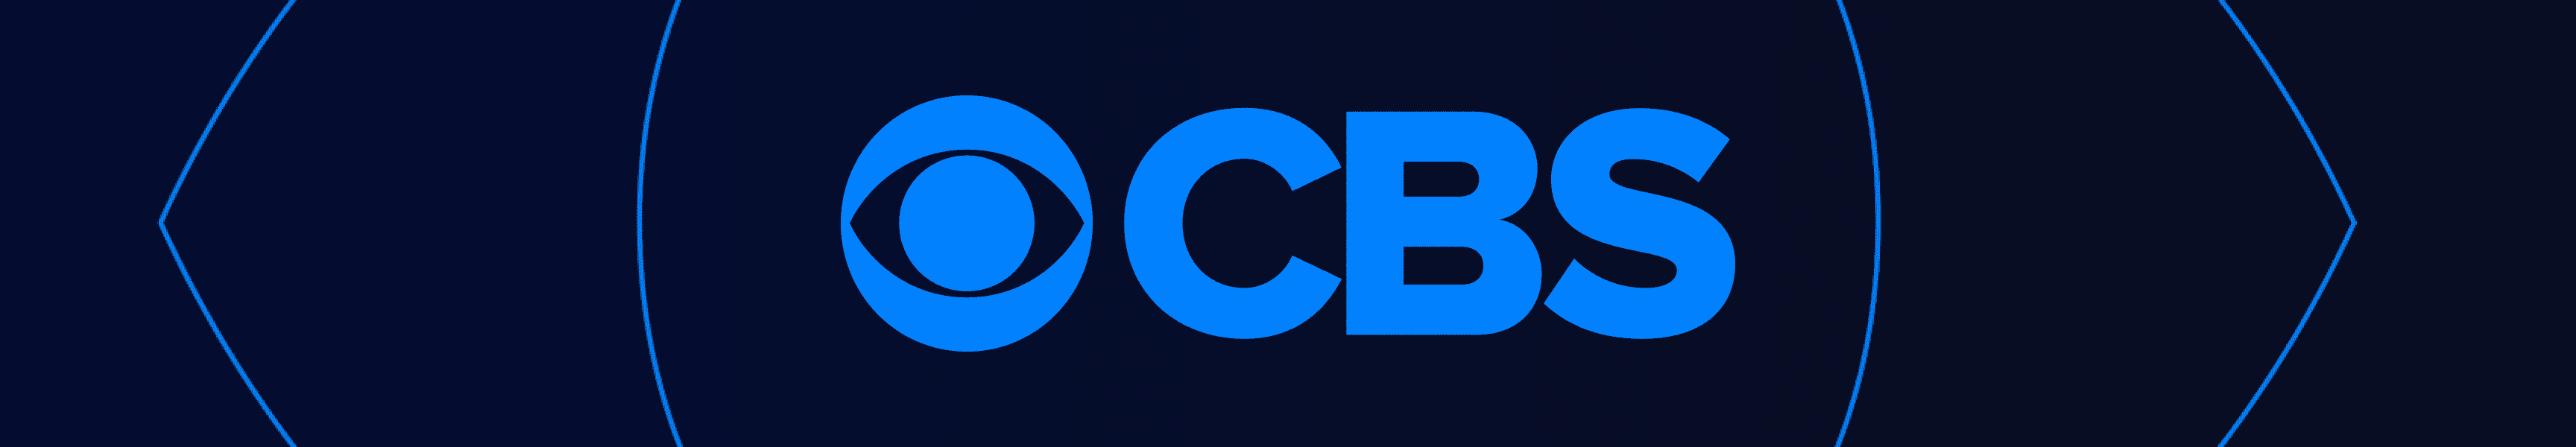 CBS Entertainment Couvertures